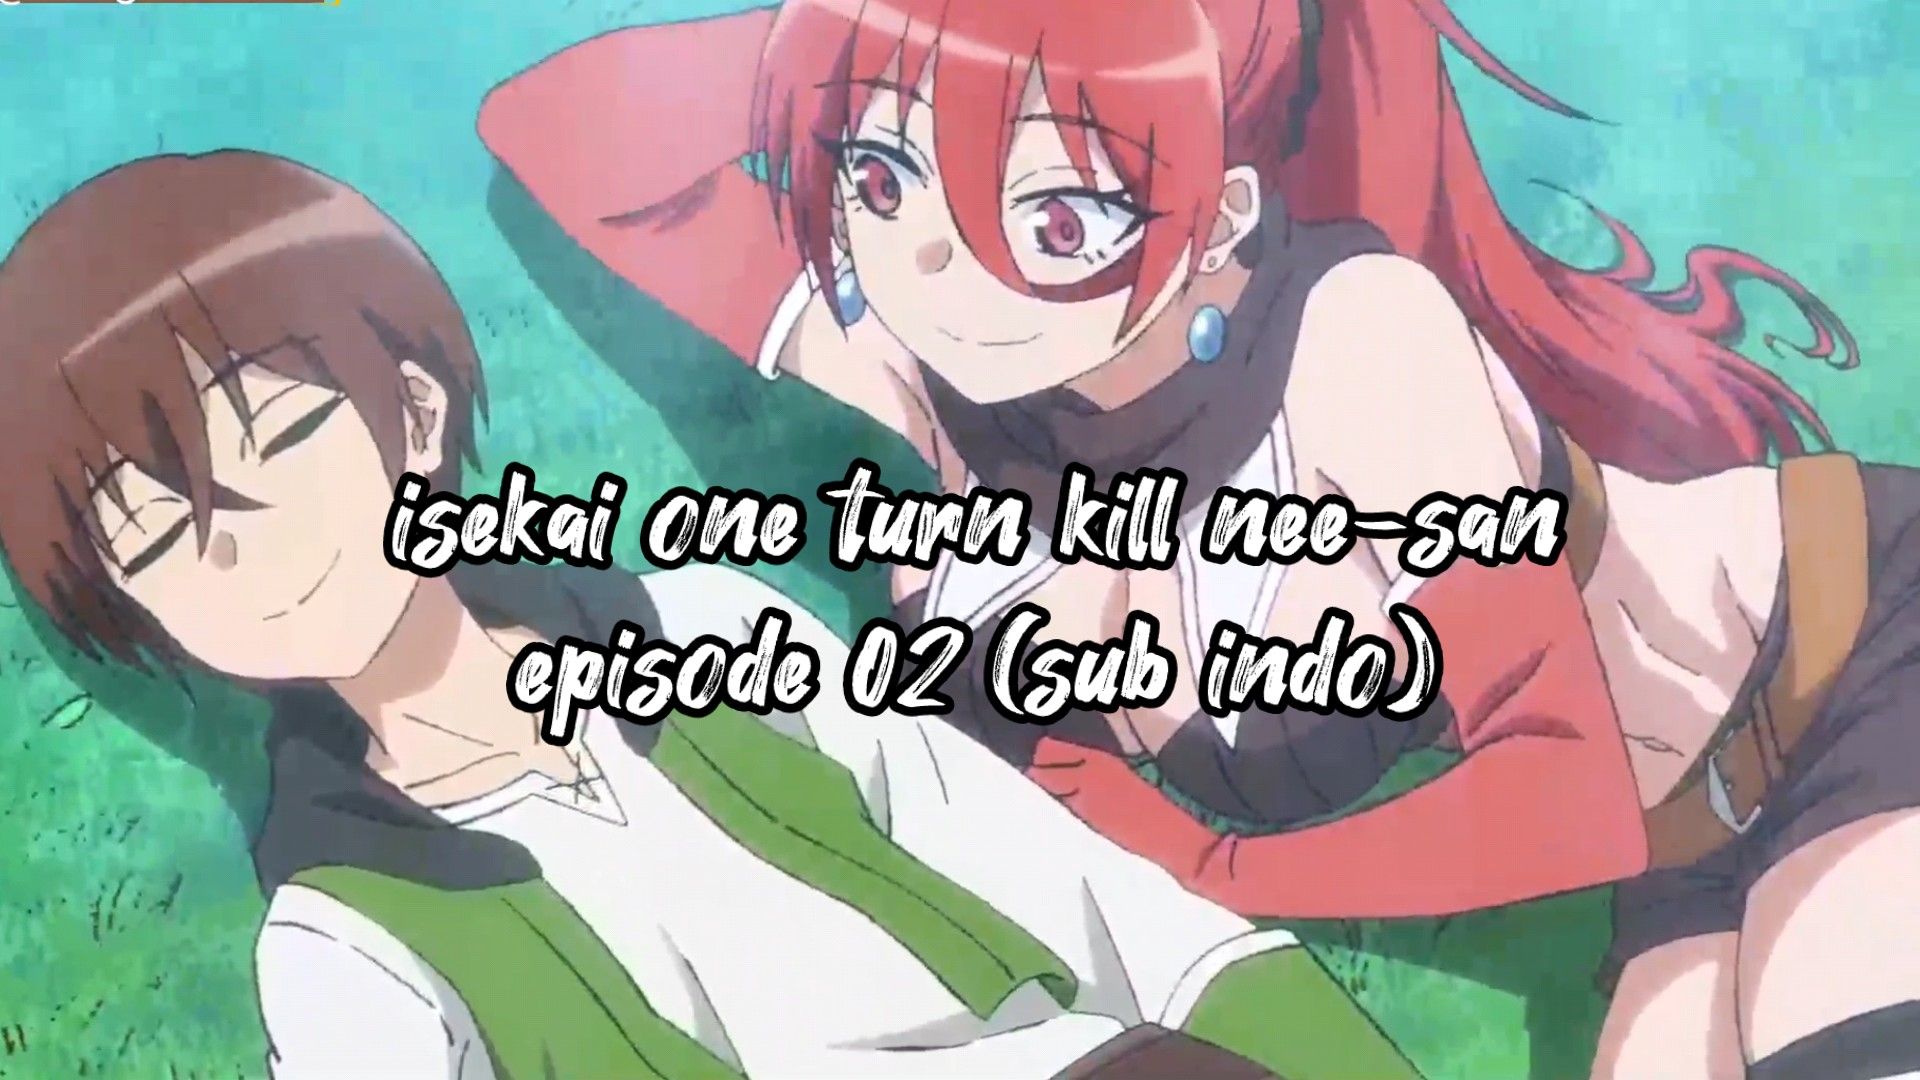 episode 2 Isekai One turn kill neesan (Sub indo) 1080p - BiliBili